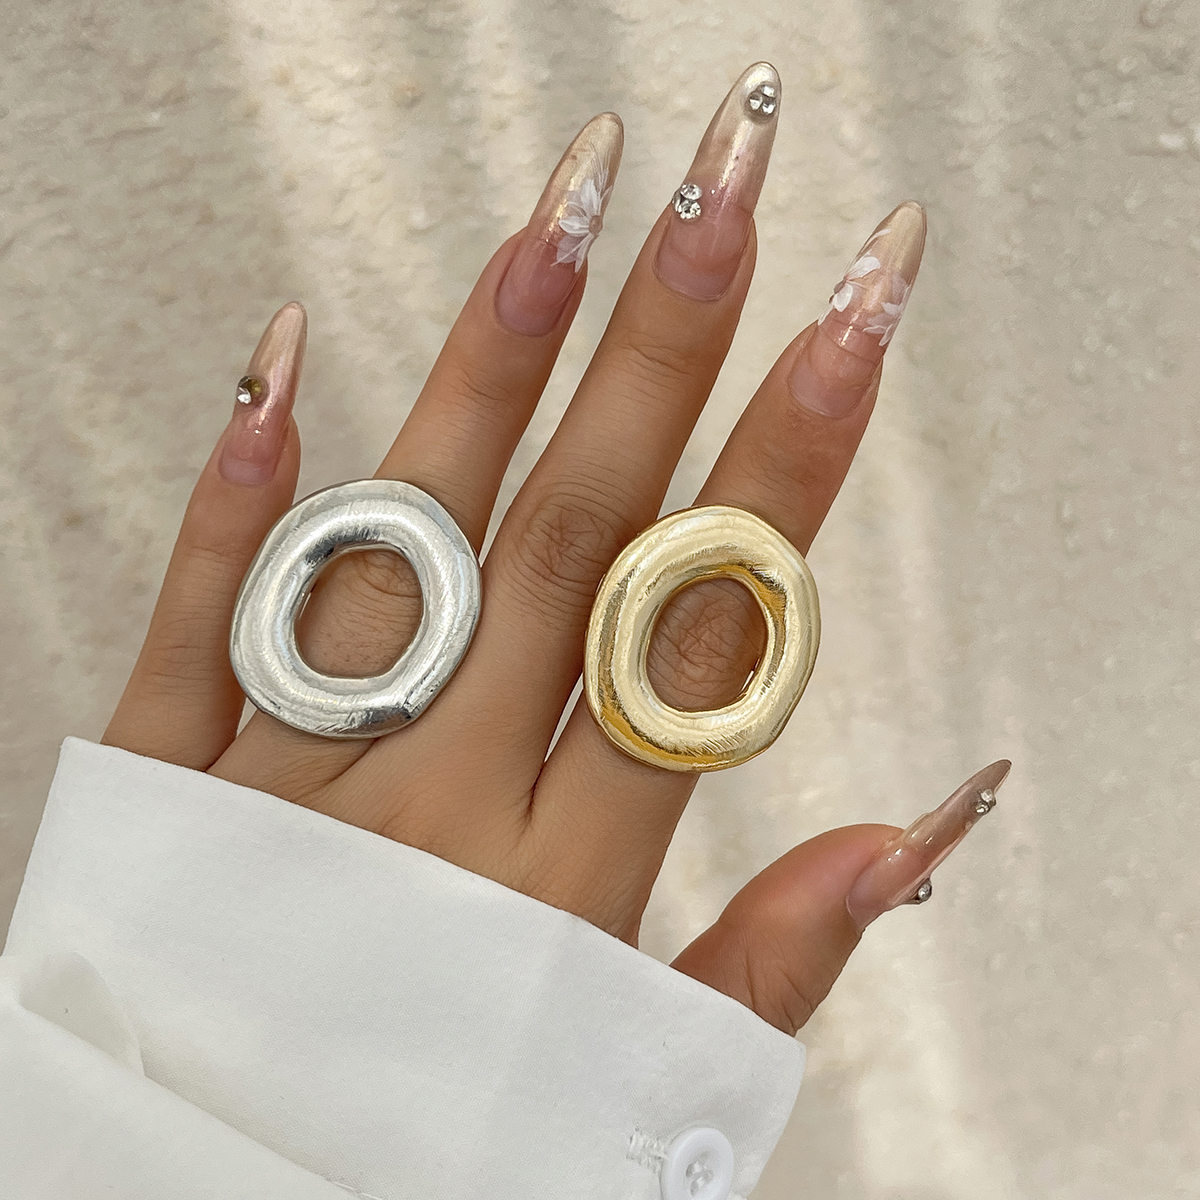 不规则金属O型戒指女 欧美新潮时尚夸张个性旅拍写真搭配指环饰品